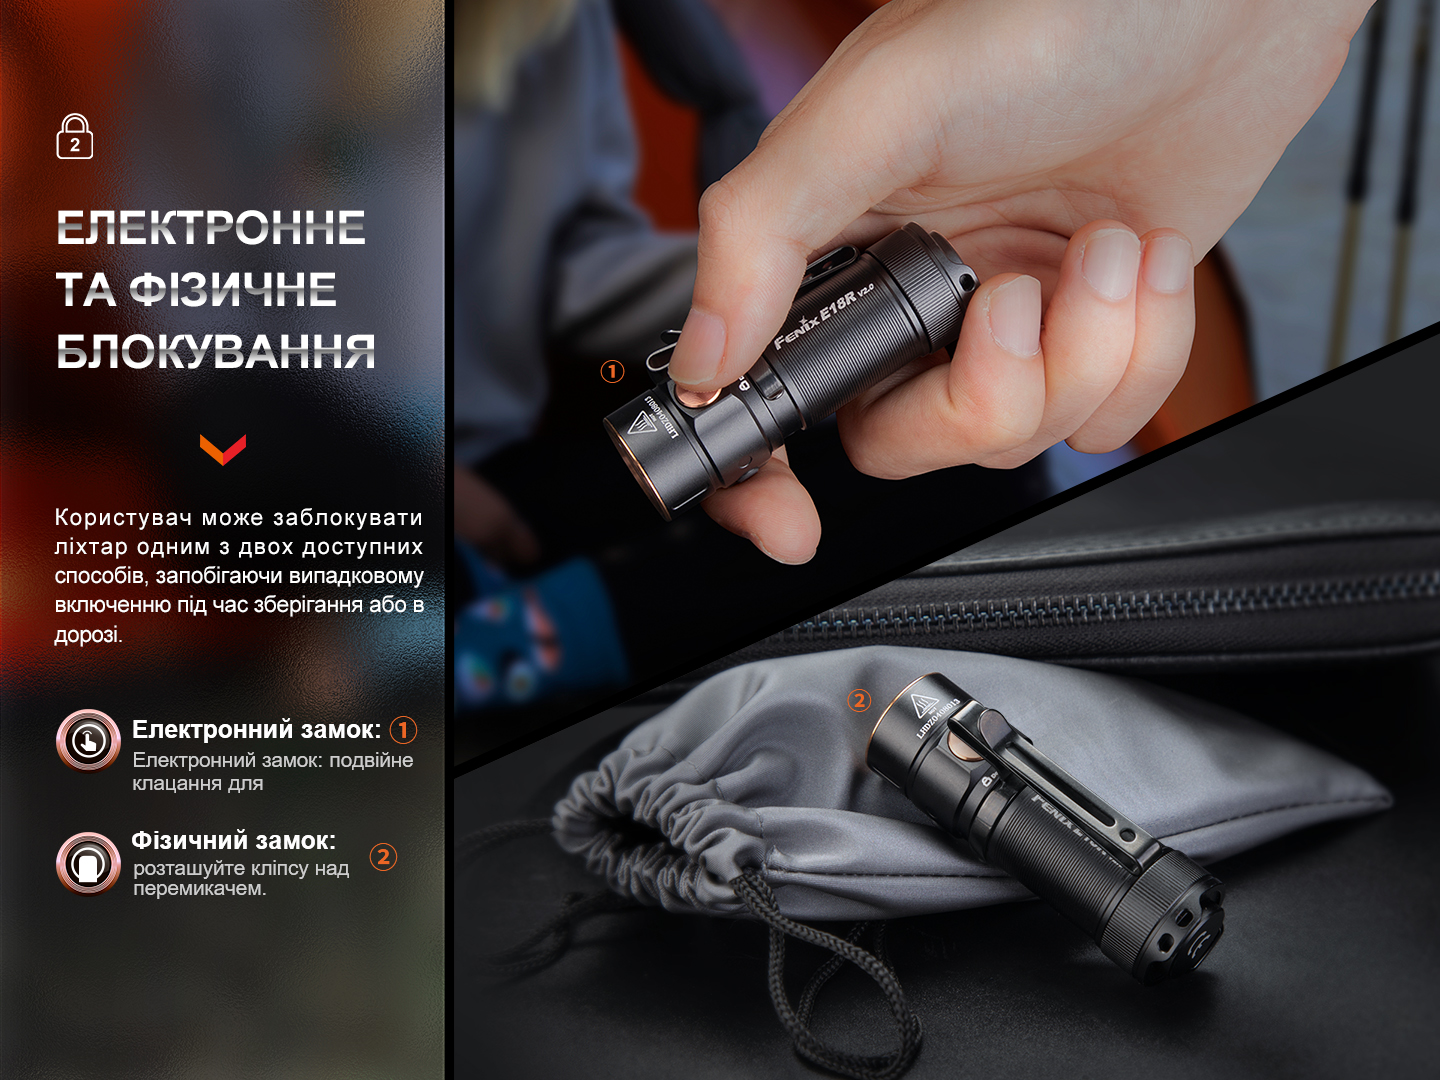 Фонарь ручной Fenix E18RV20 купить в Киеве, лучшая цена на фонарики  каталог интернет-магазина Office-Mix